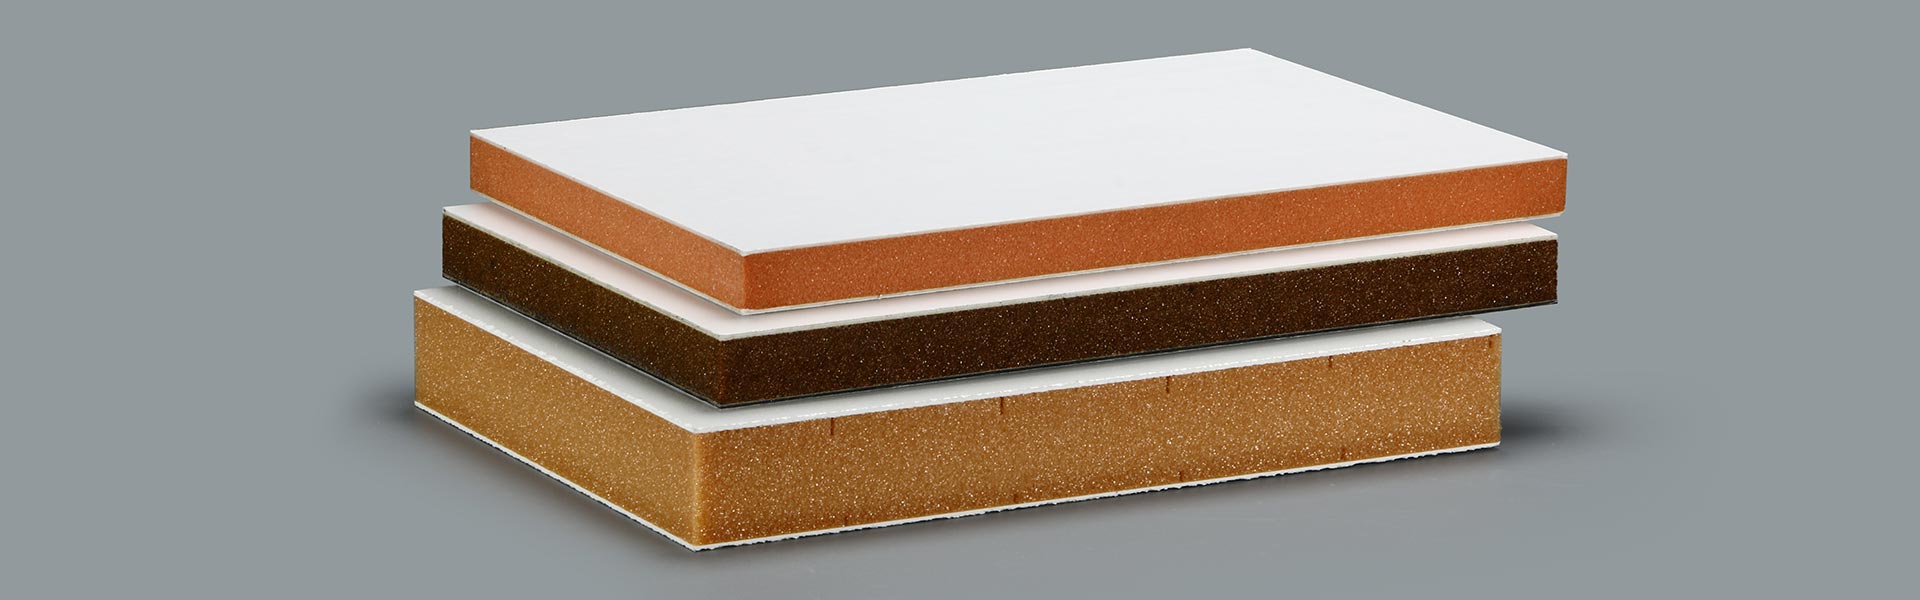 GRP PVC Sandwich Panels